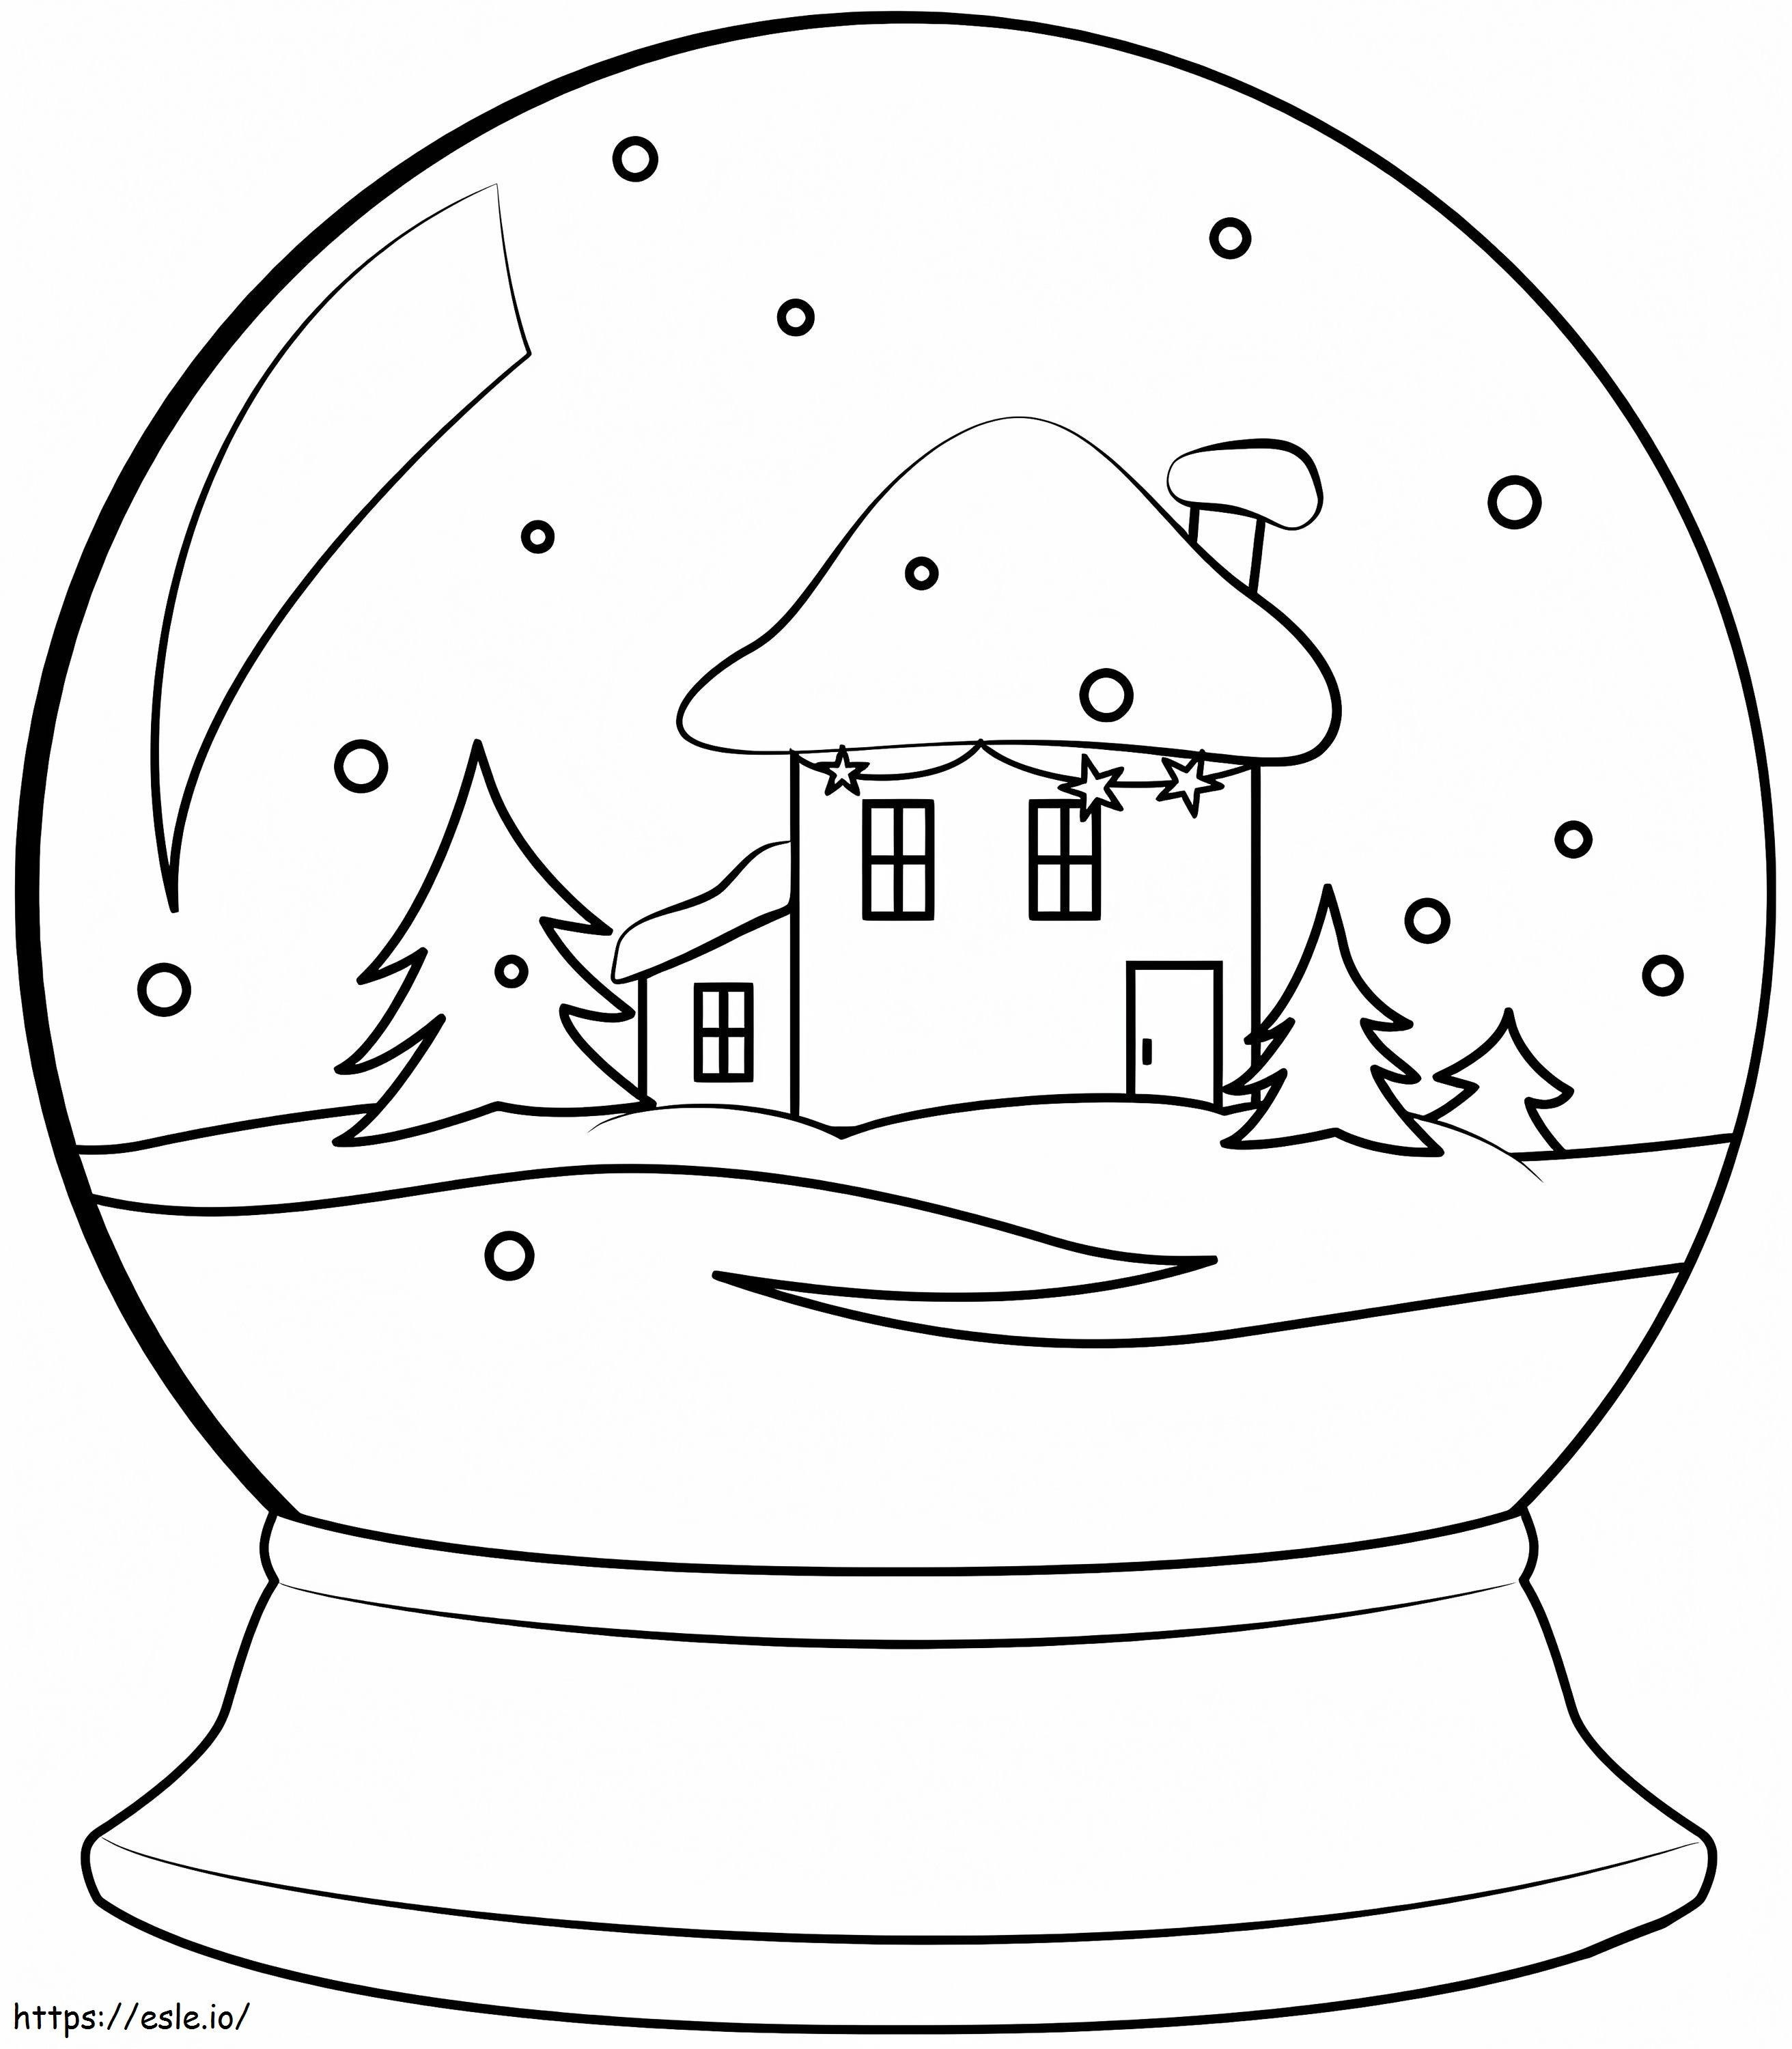 Świąteczna kula śnieżna kolorowanka